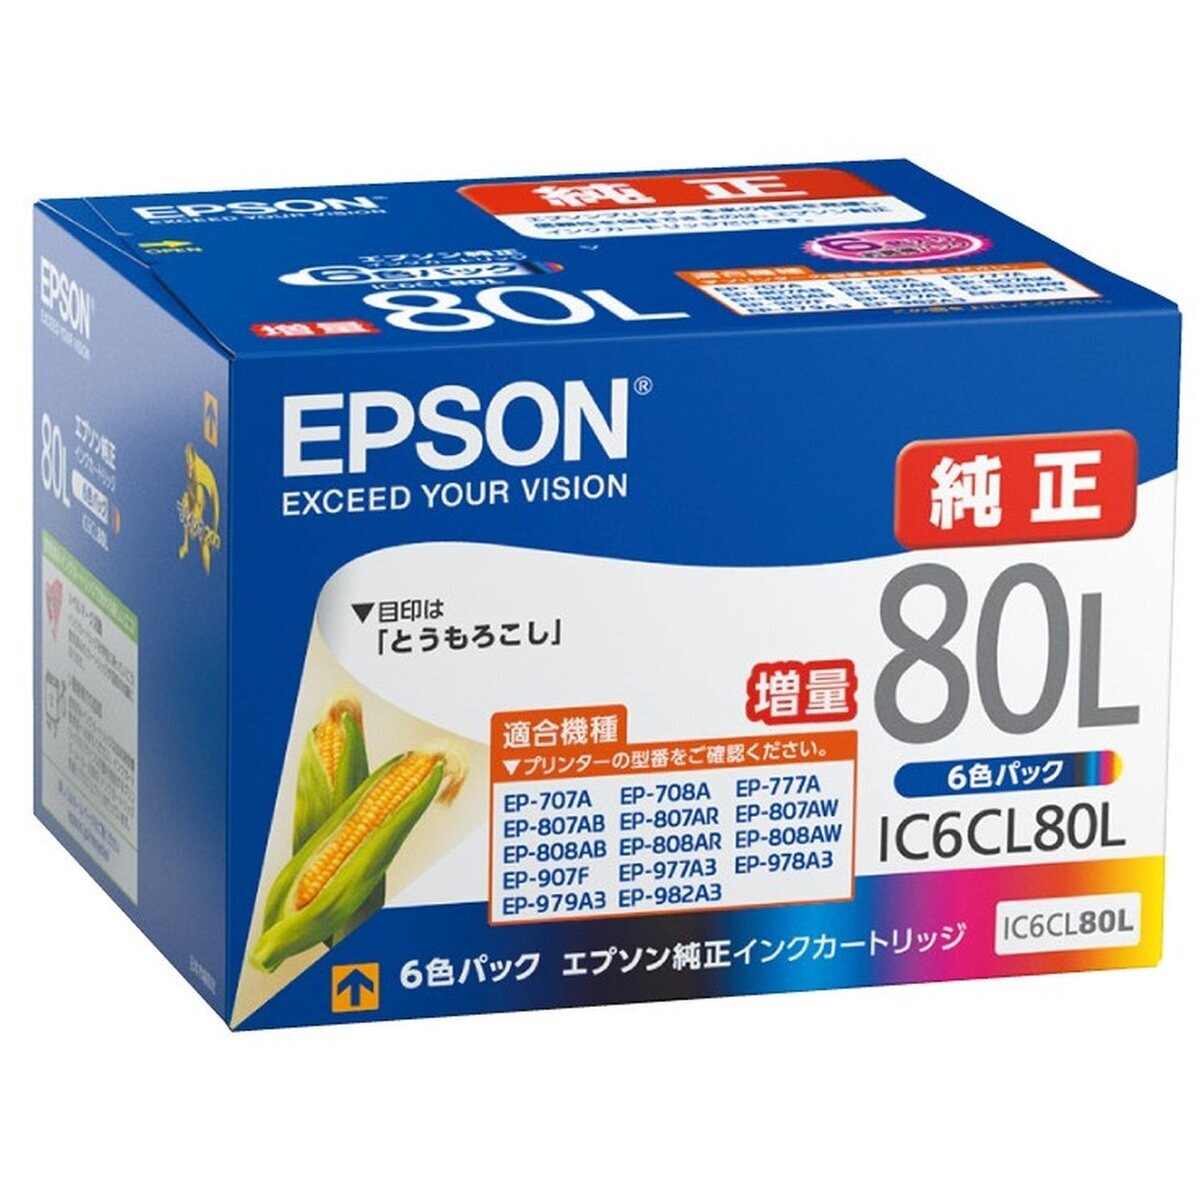 EPSON インクカートリッジ 80L 純正  6色セット (4箱分)